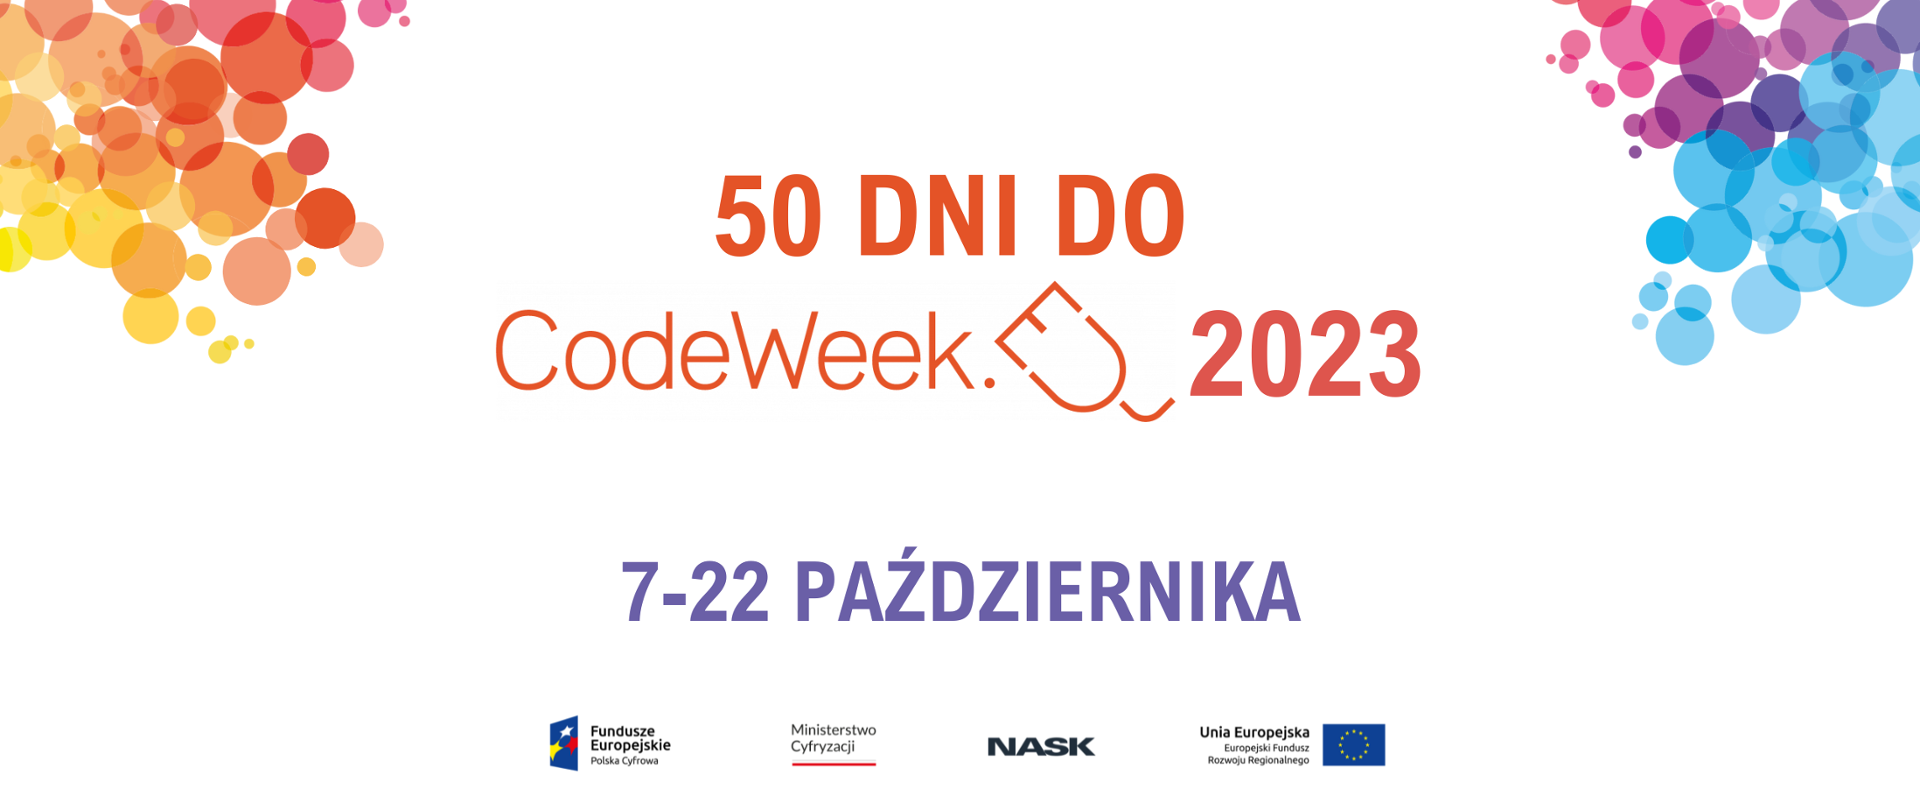 Rozpoczynamy odliczanie - tylko 50 dni dzieli nas od startu CodeWeek 2023! 